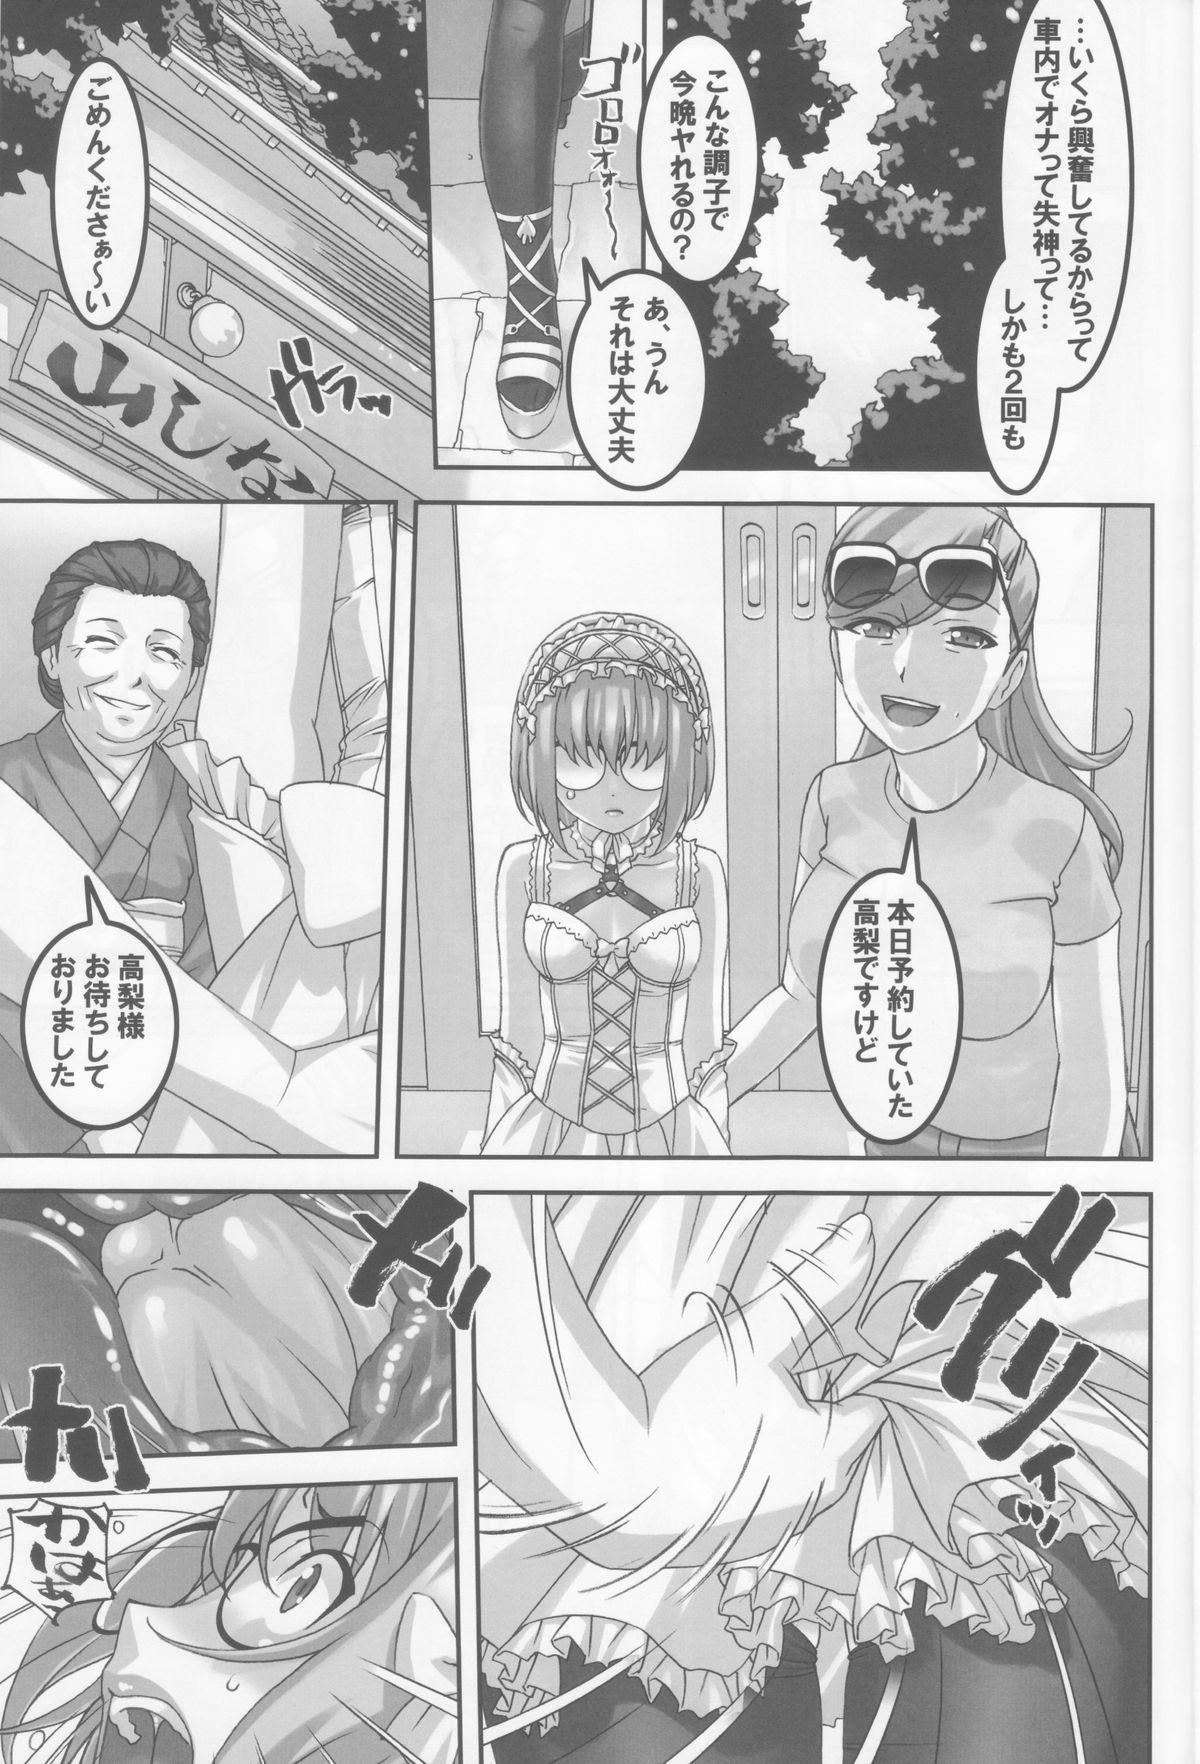 Mallu Anoko ga Natsuyasumi ni Ryokou saki de Oshiri no Ana wo Kizetsu suru hodo Naburare tsuzukeru Manga Sweet - Page 12